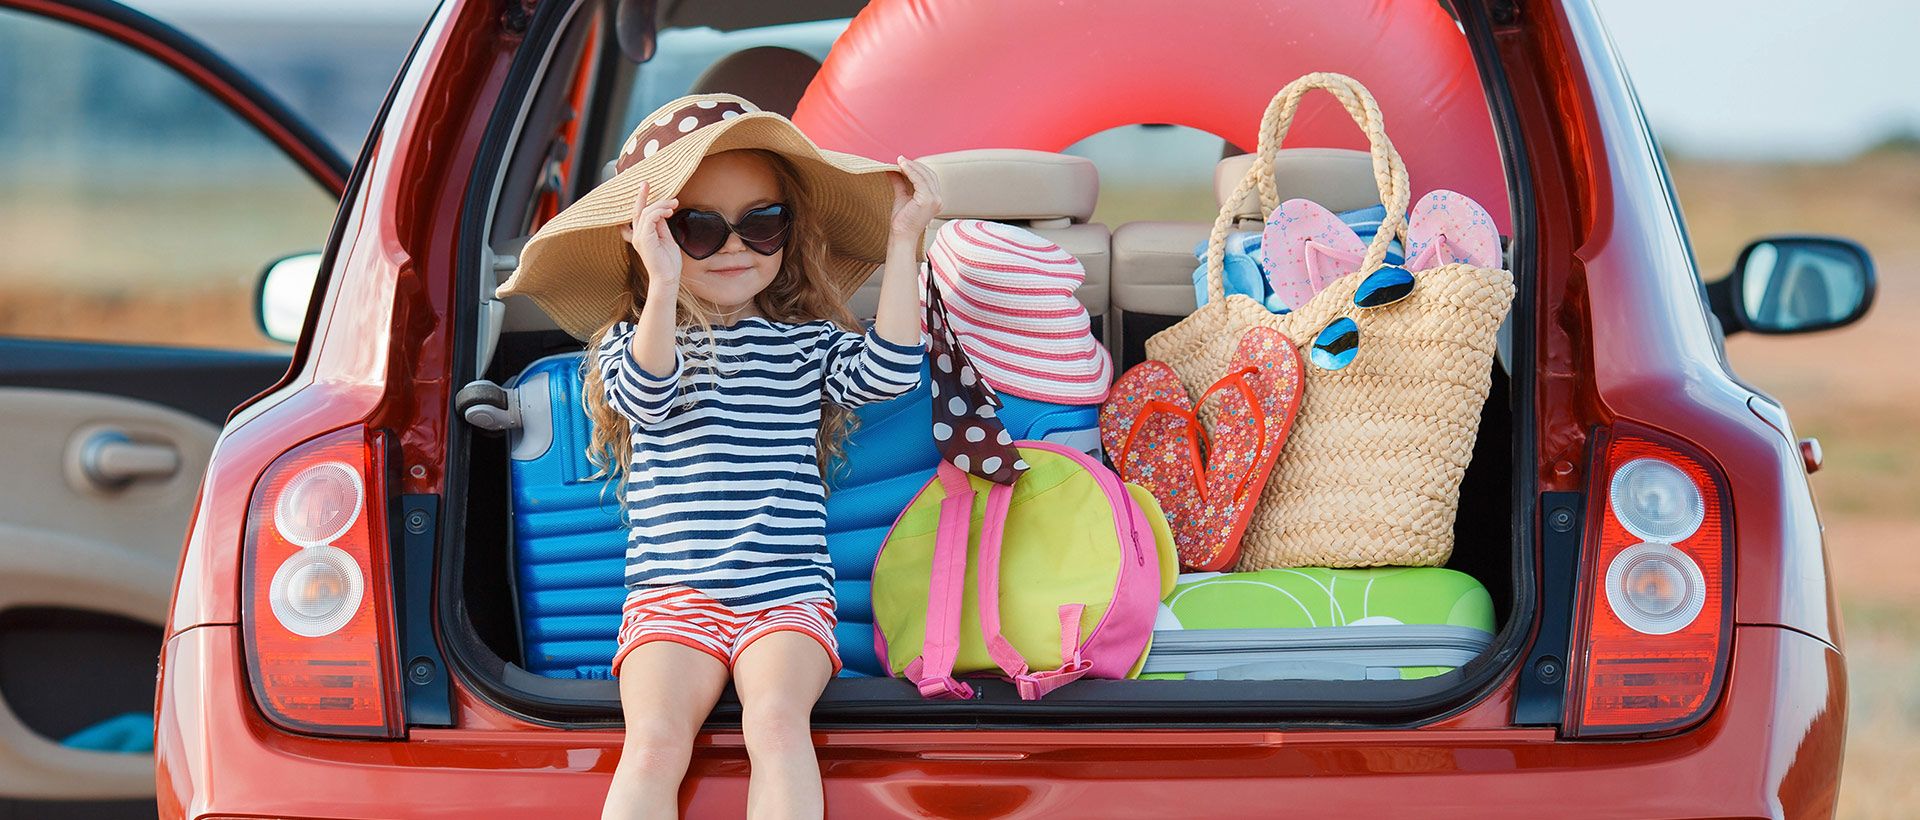 Op vakantie met de kids: 5 handige tips voor een stressvrij verblijf!